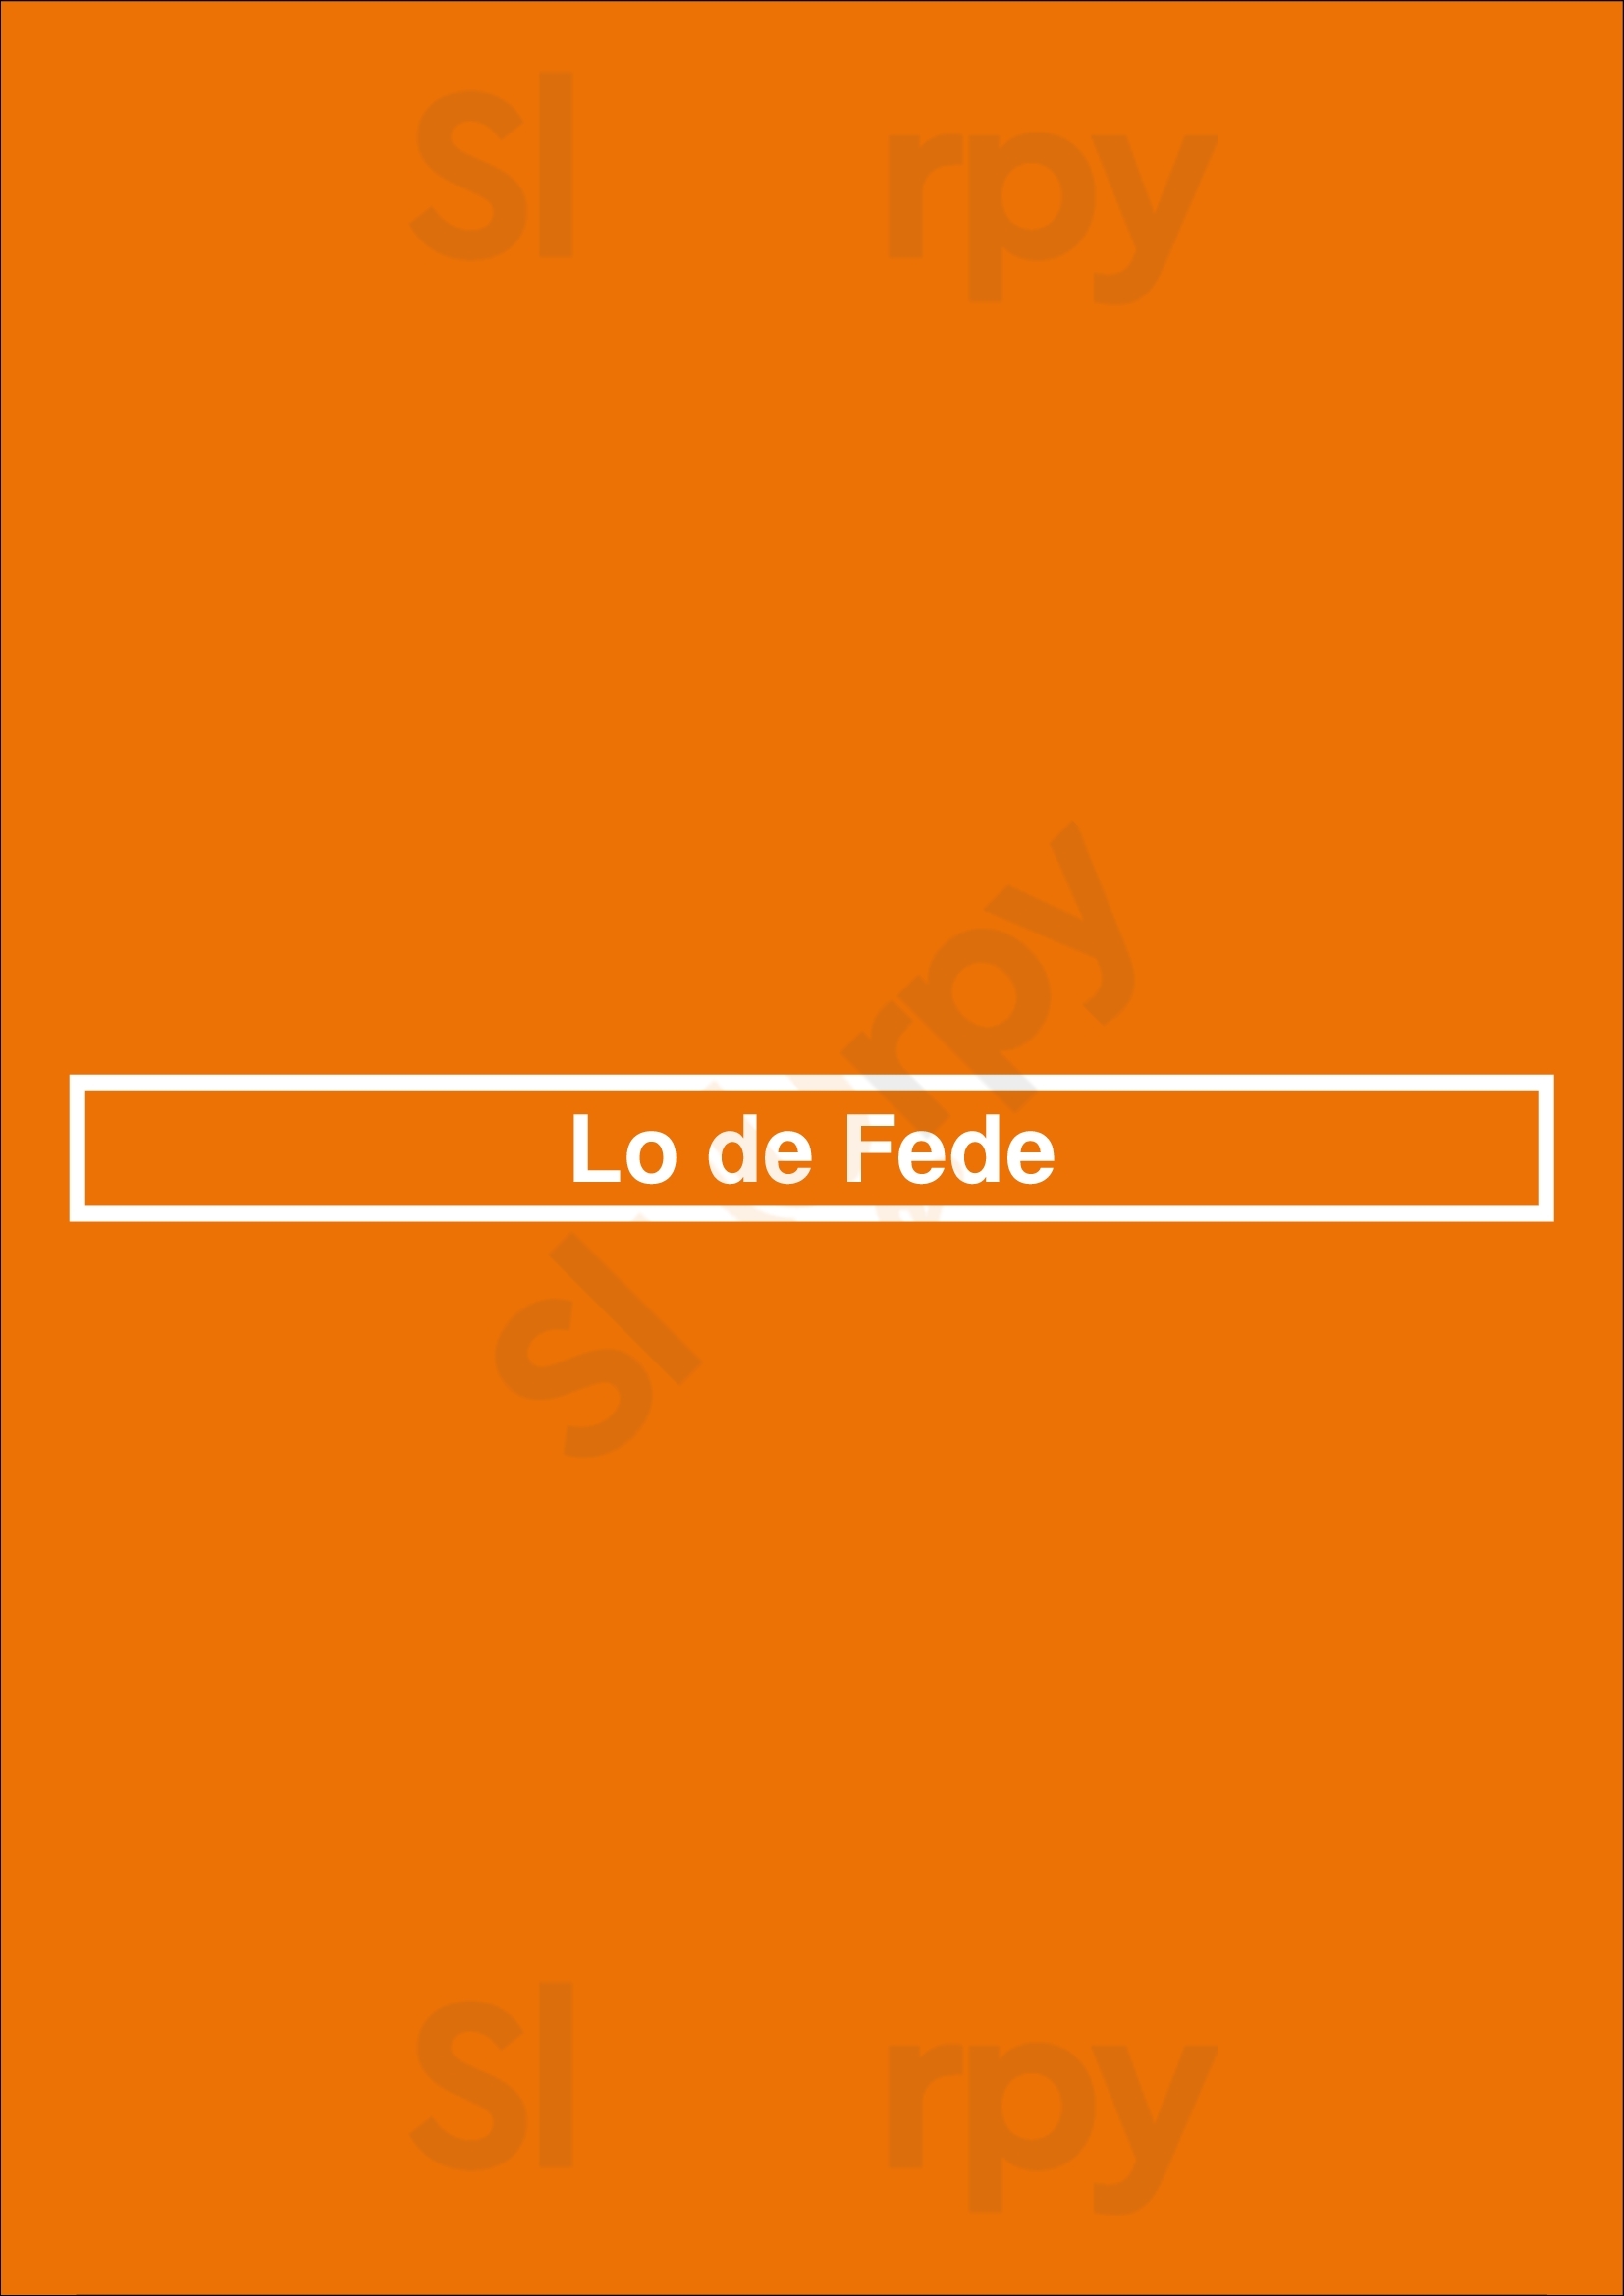 Lo De Fede Buenos Aires Menu - 1